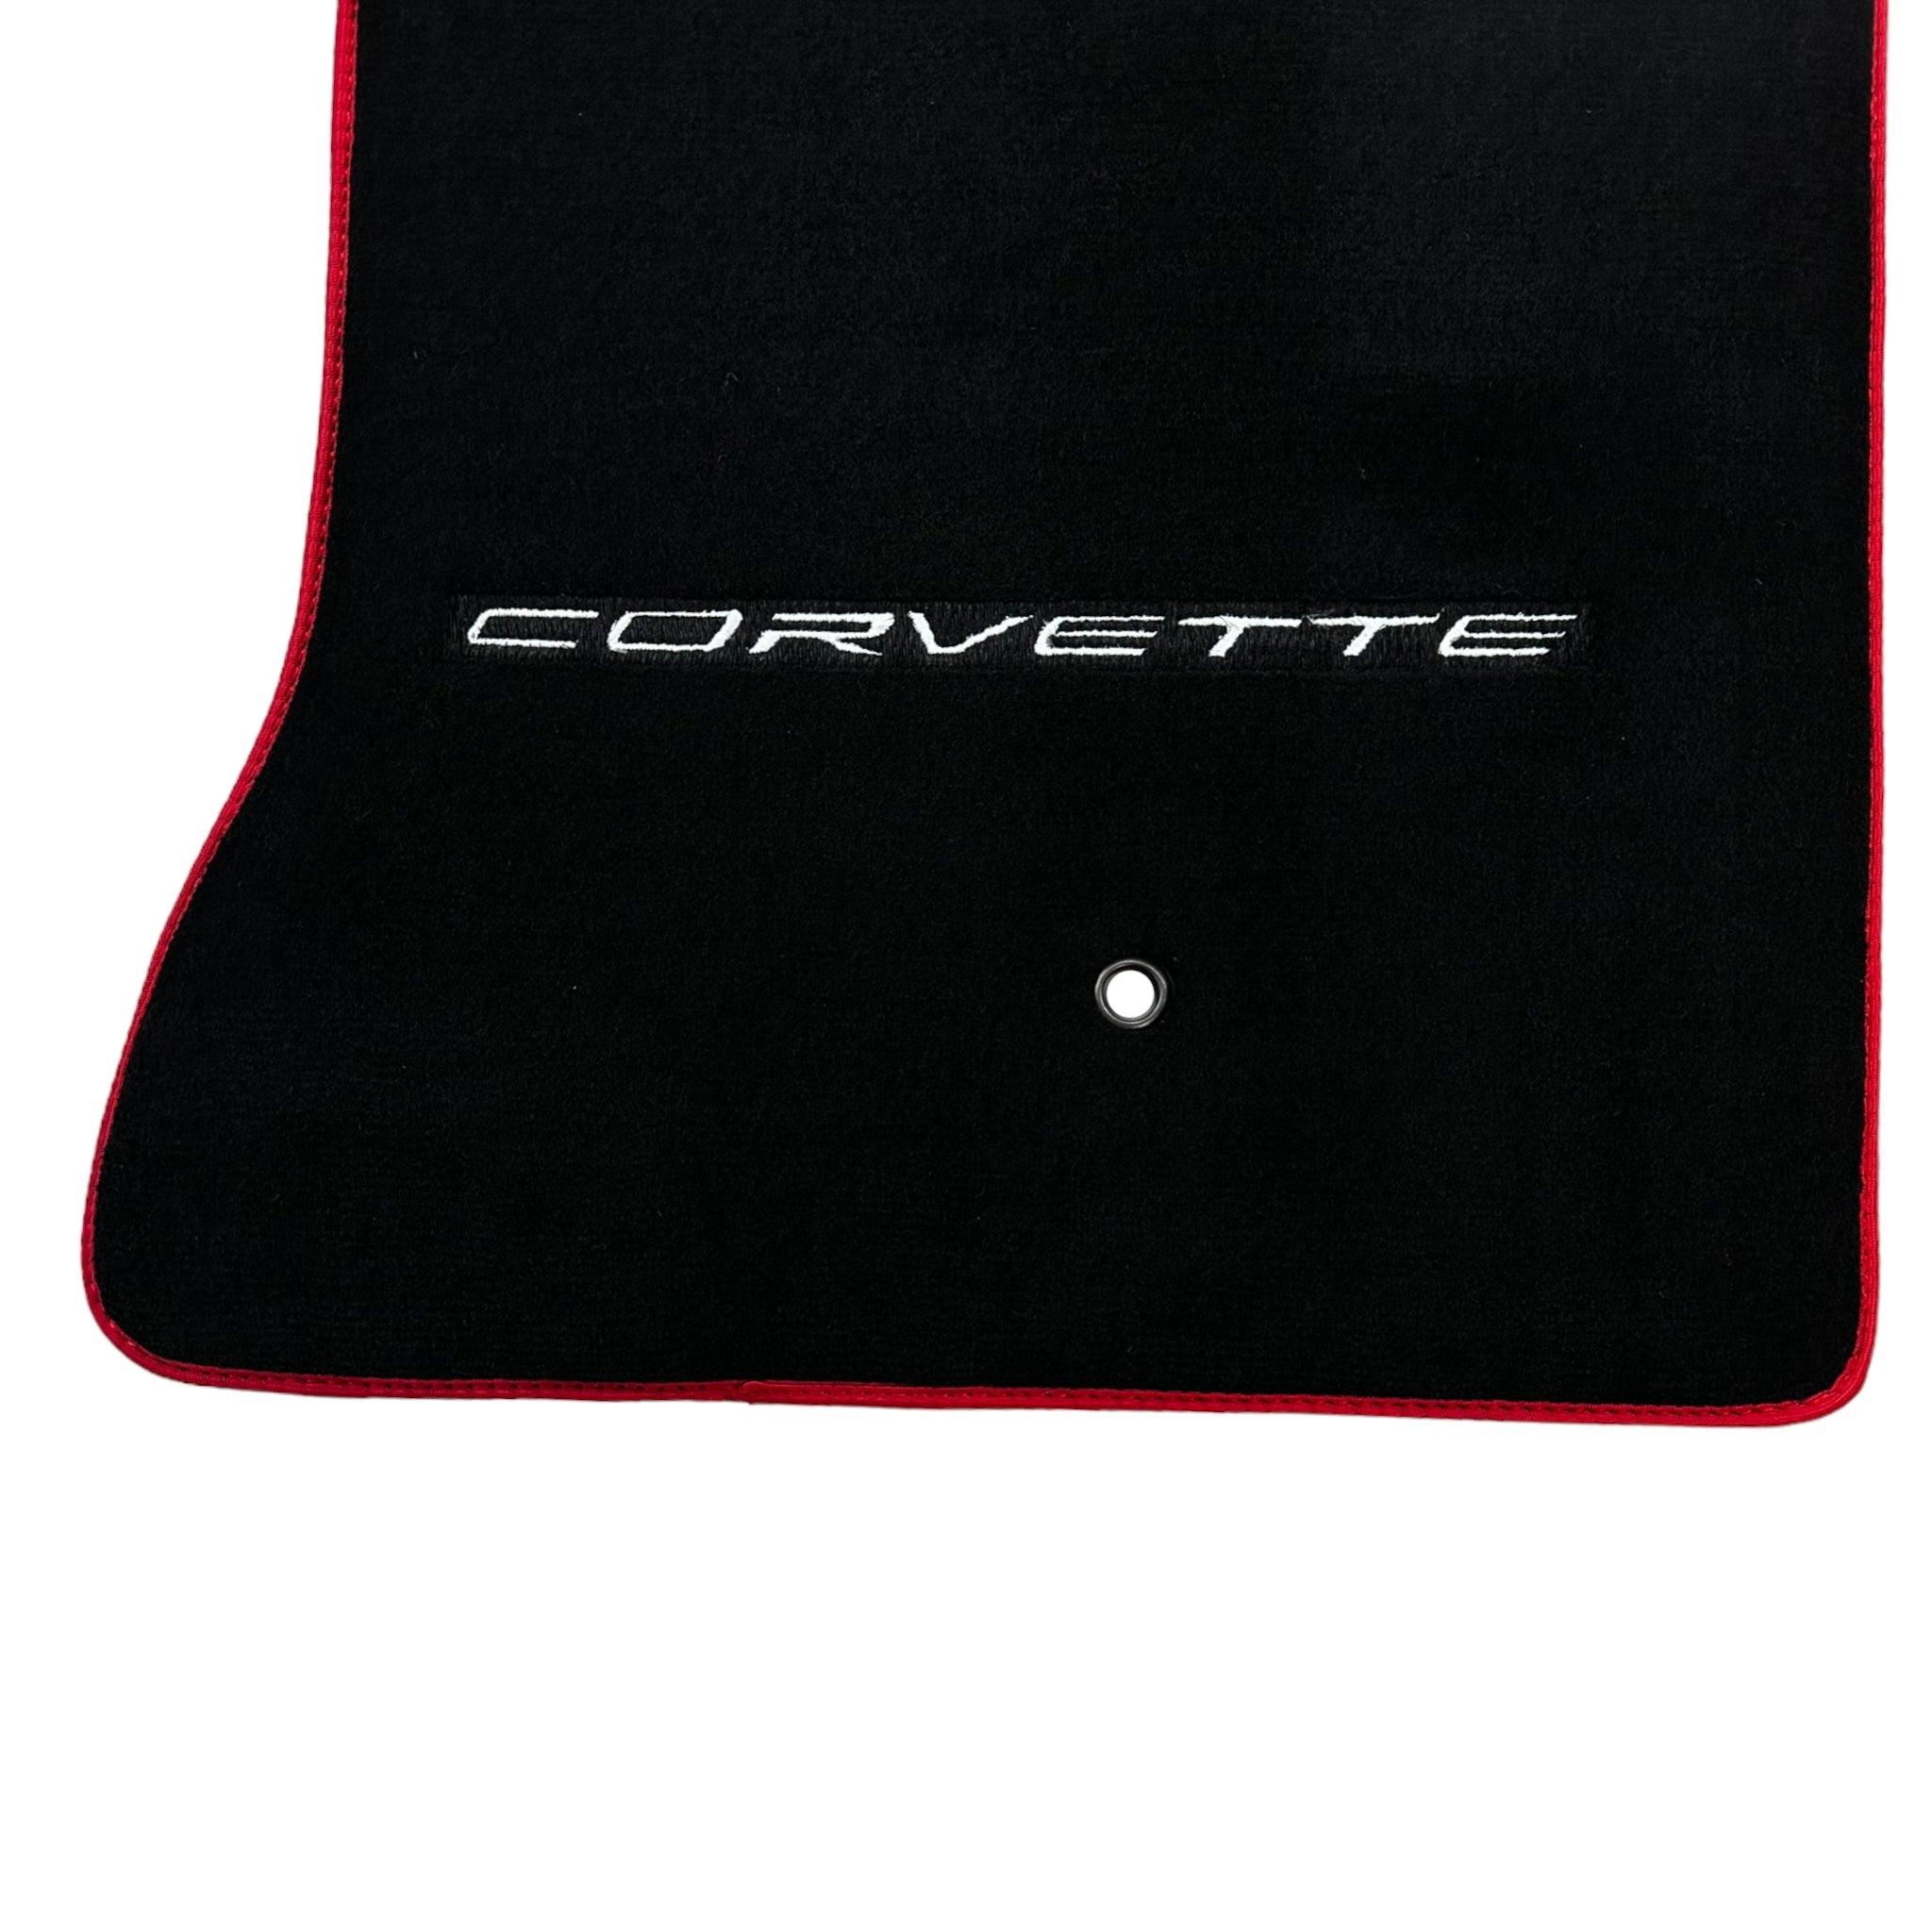 Black Floor Mats For Chevrolet Corvette C6 (2005-2013)